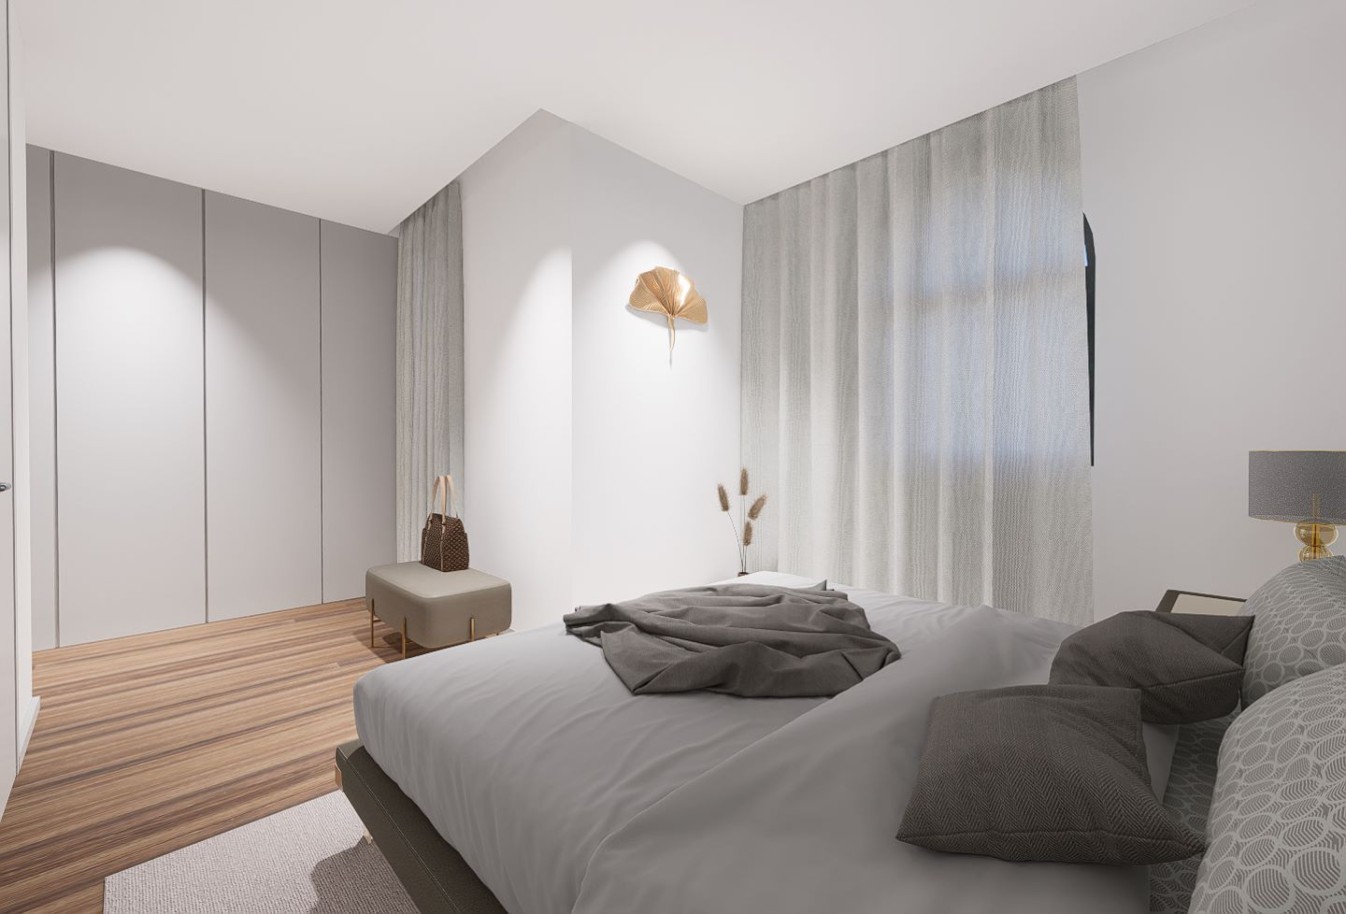 4 bedroom house - undergoing renovation, for sale - Serralves - Porto_238667